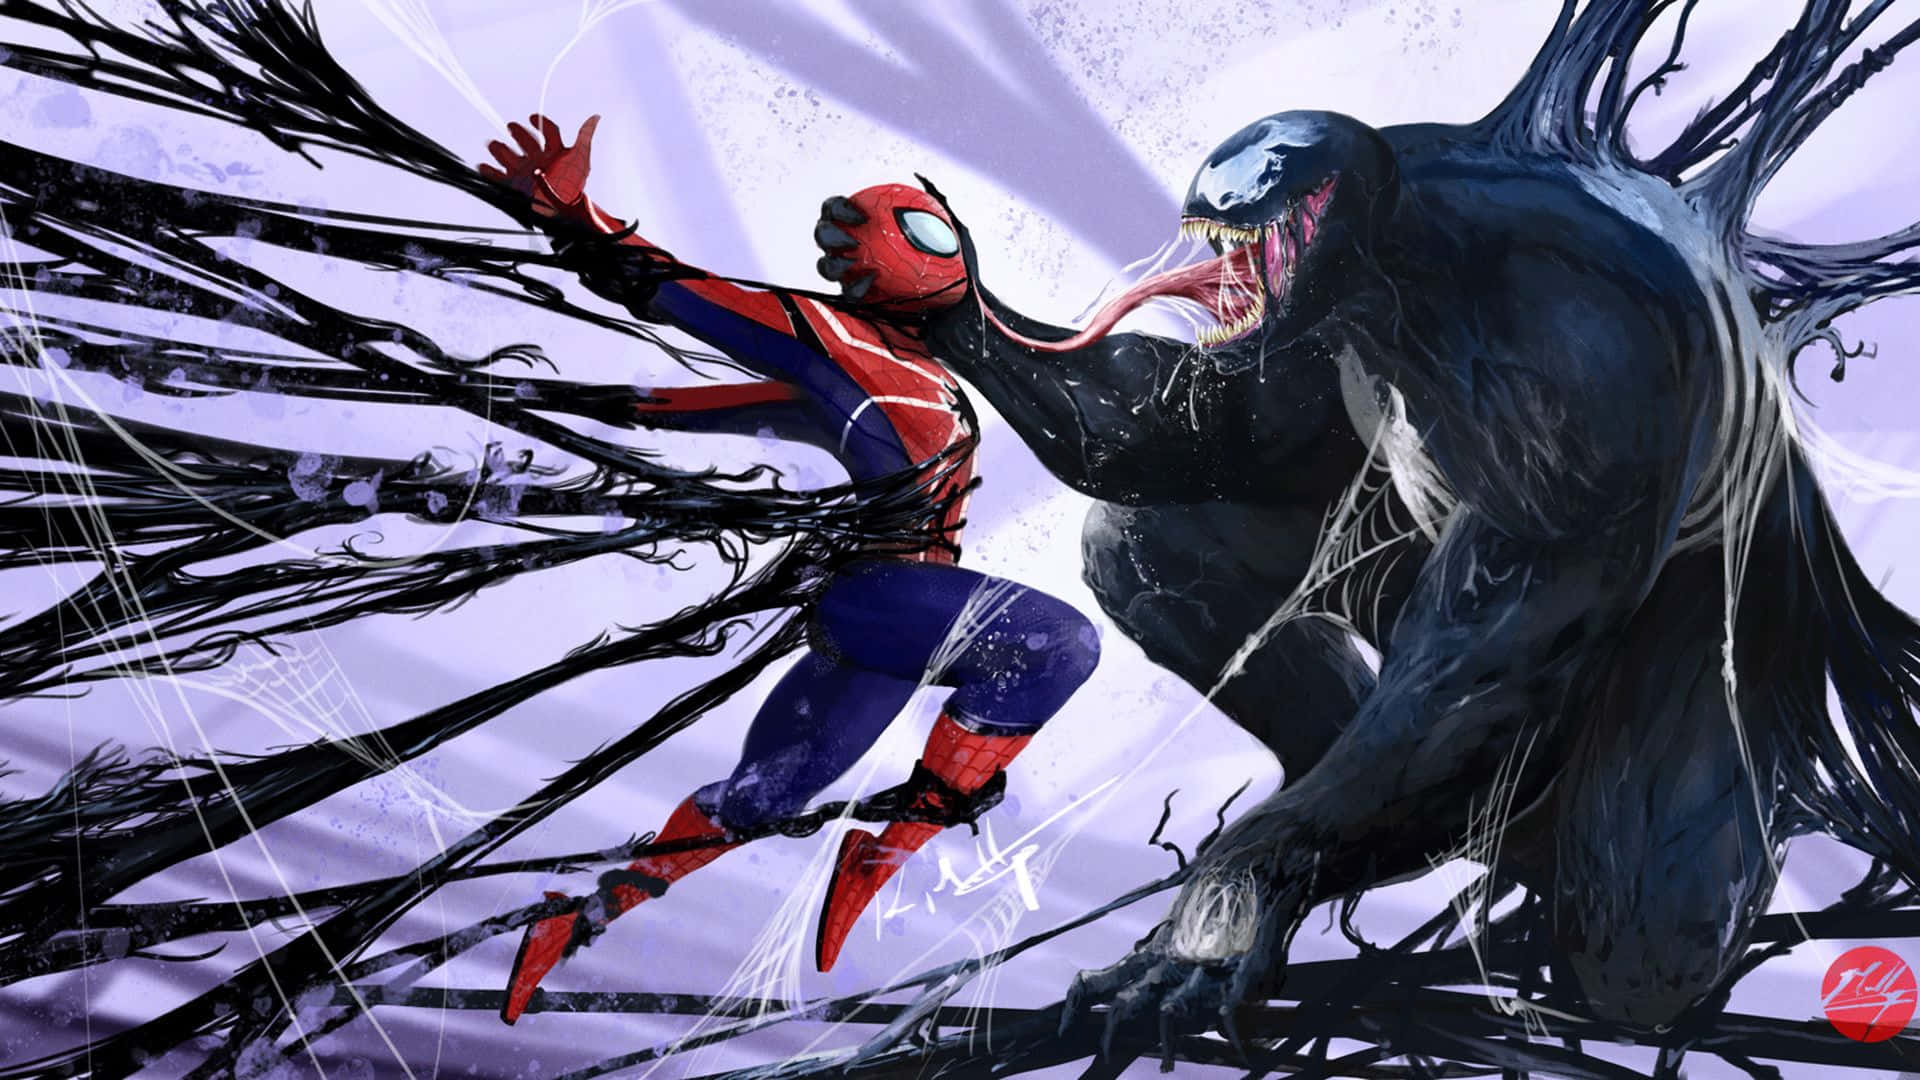 Venom Vs. Spiderman Abstract Design: Abstrakt design med Venom og Spiderman. Wallpaper